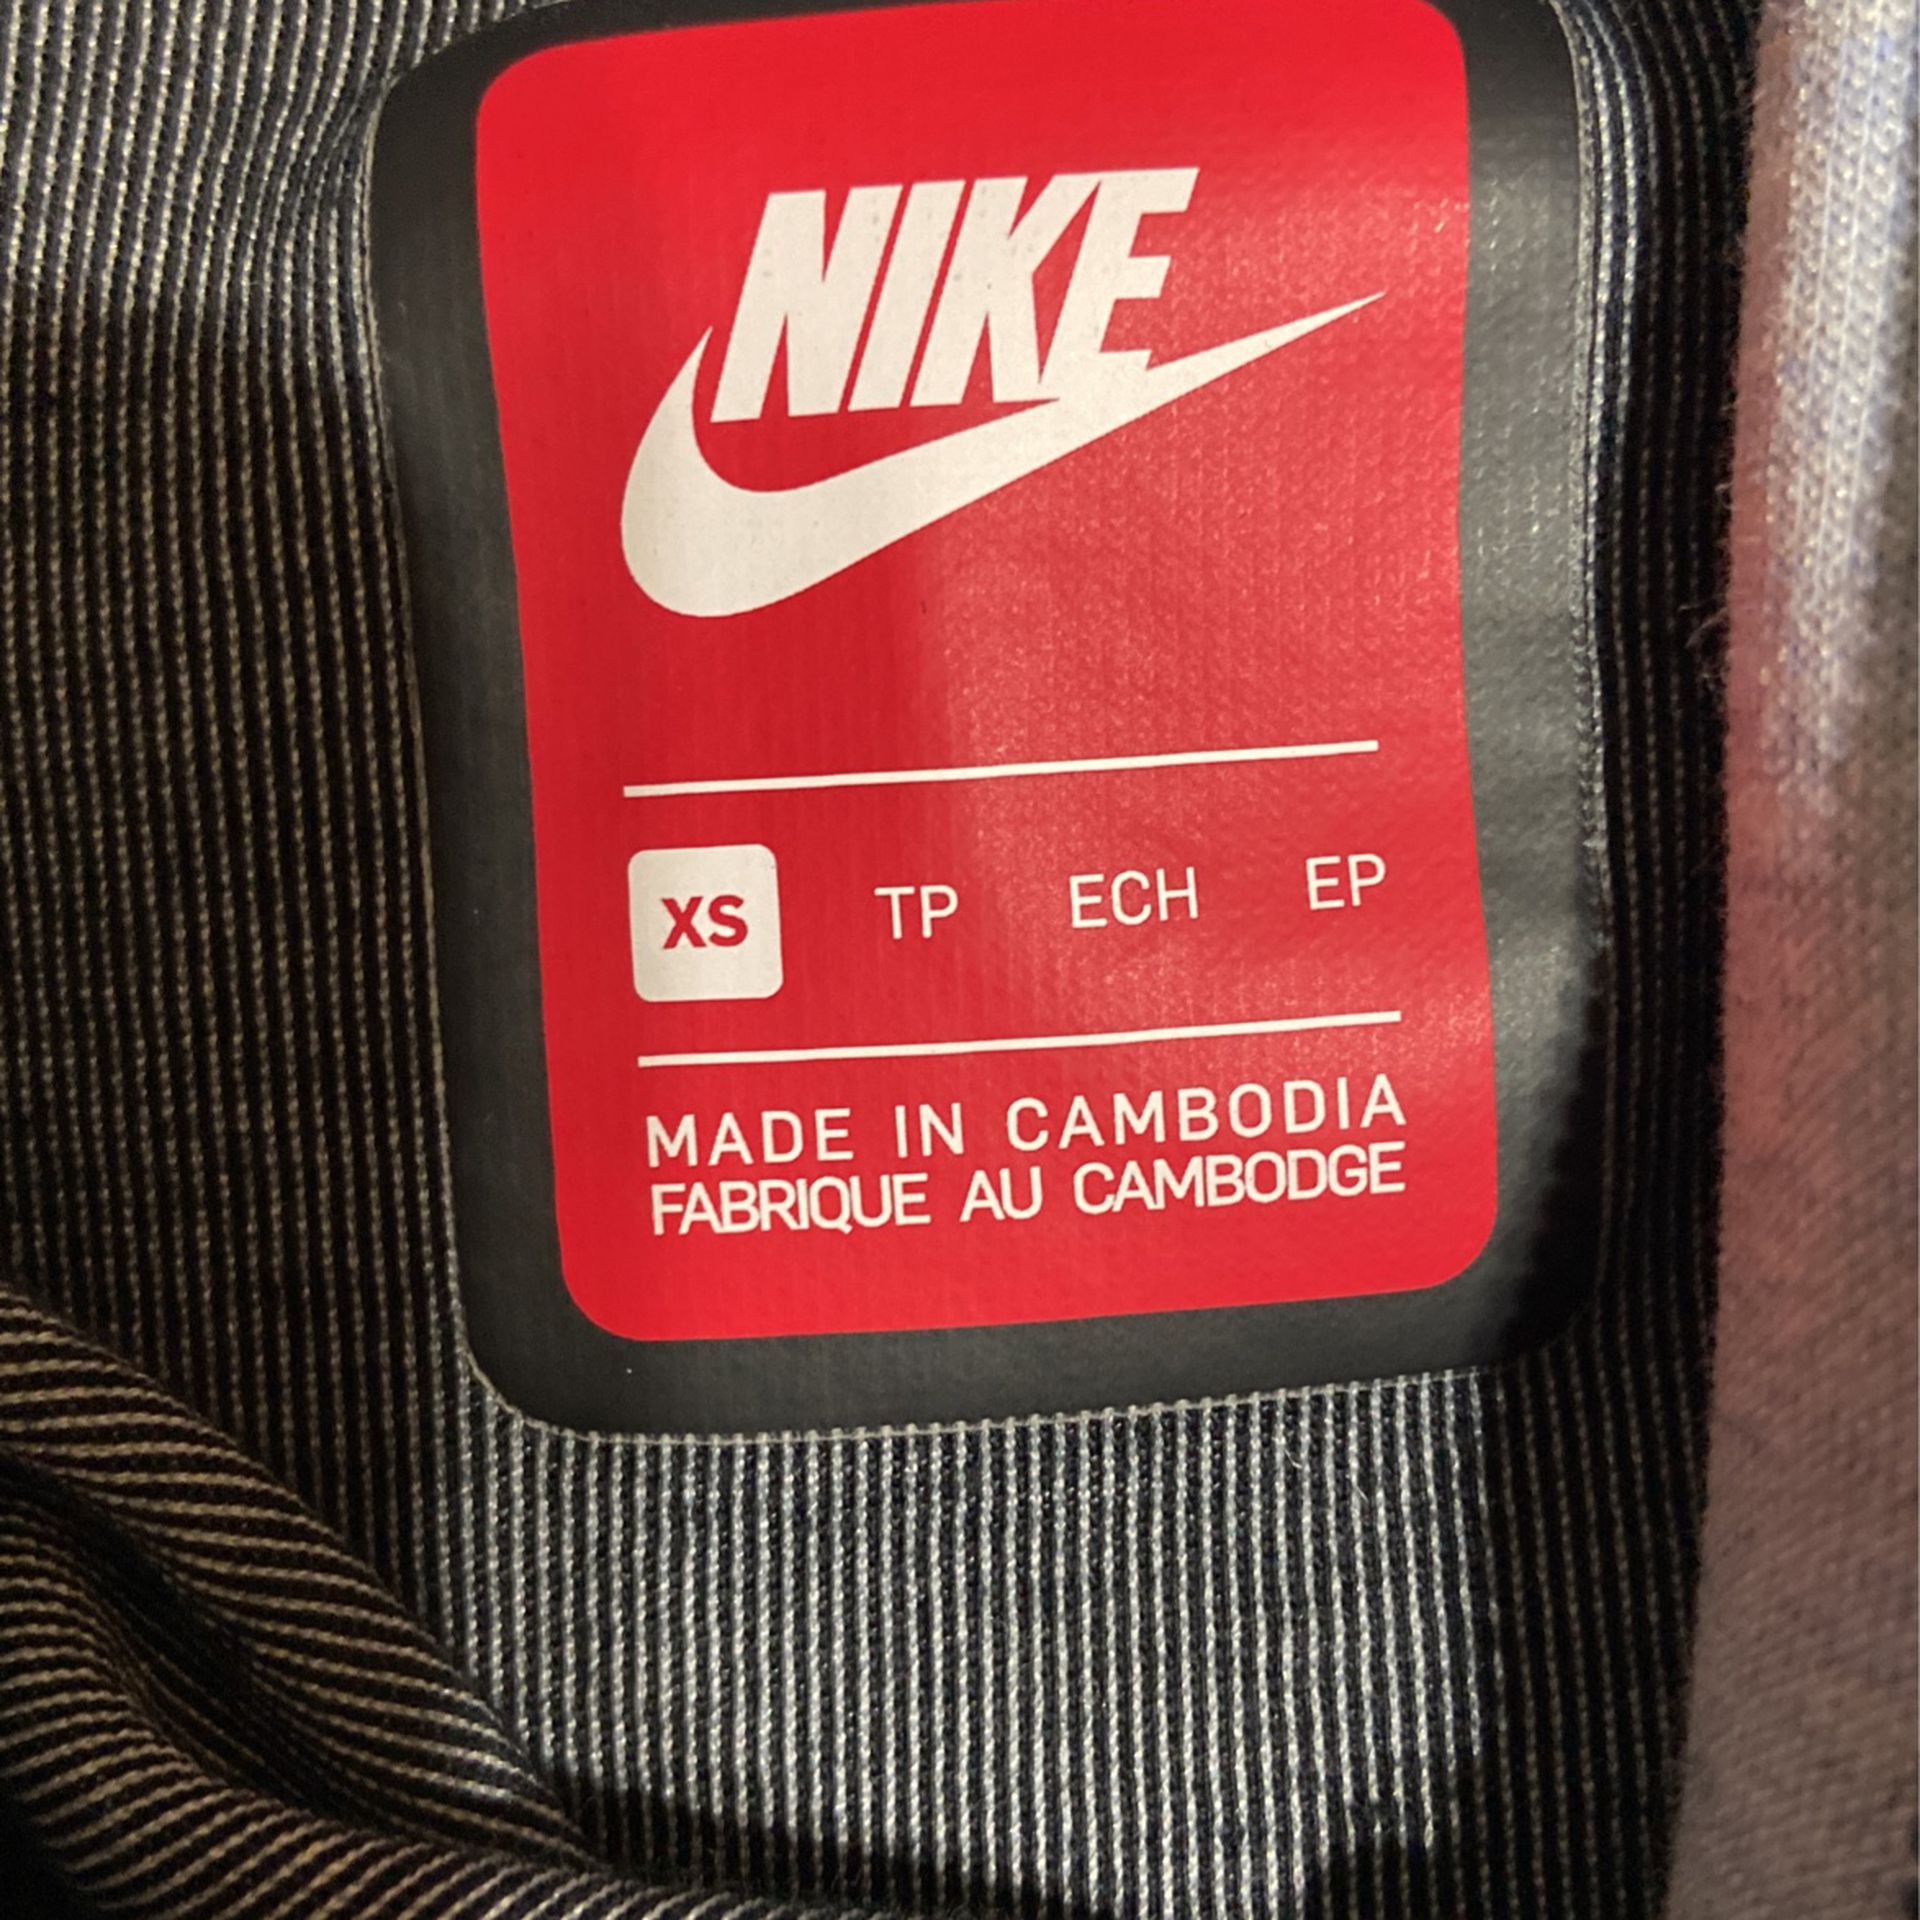 Nike Jacket 